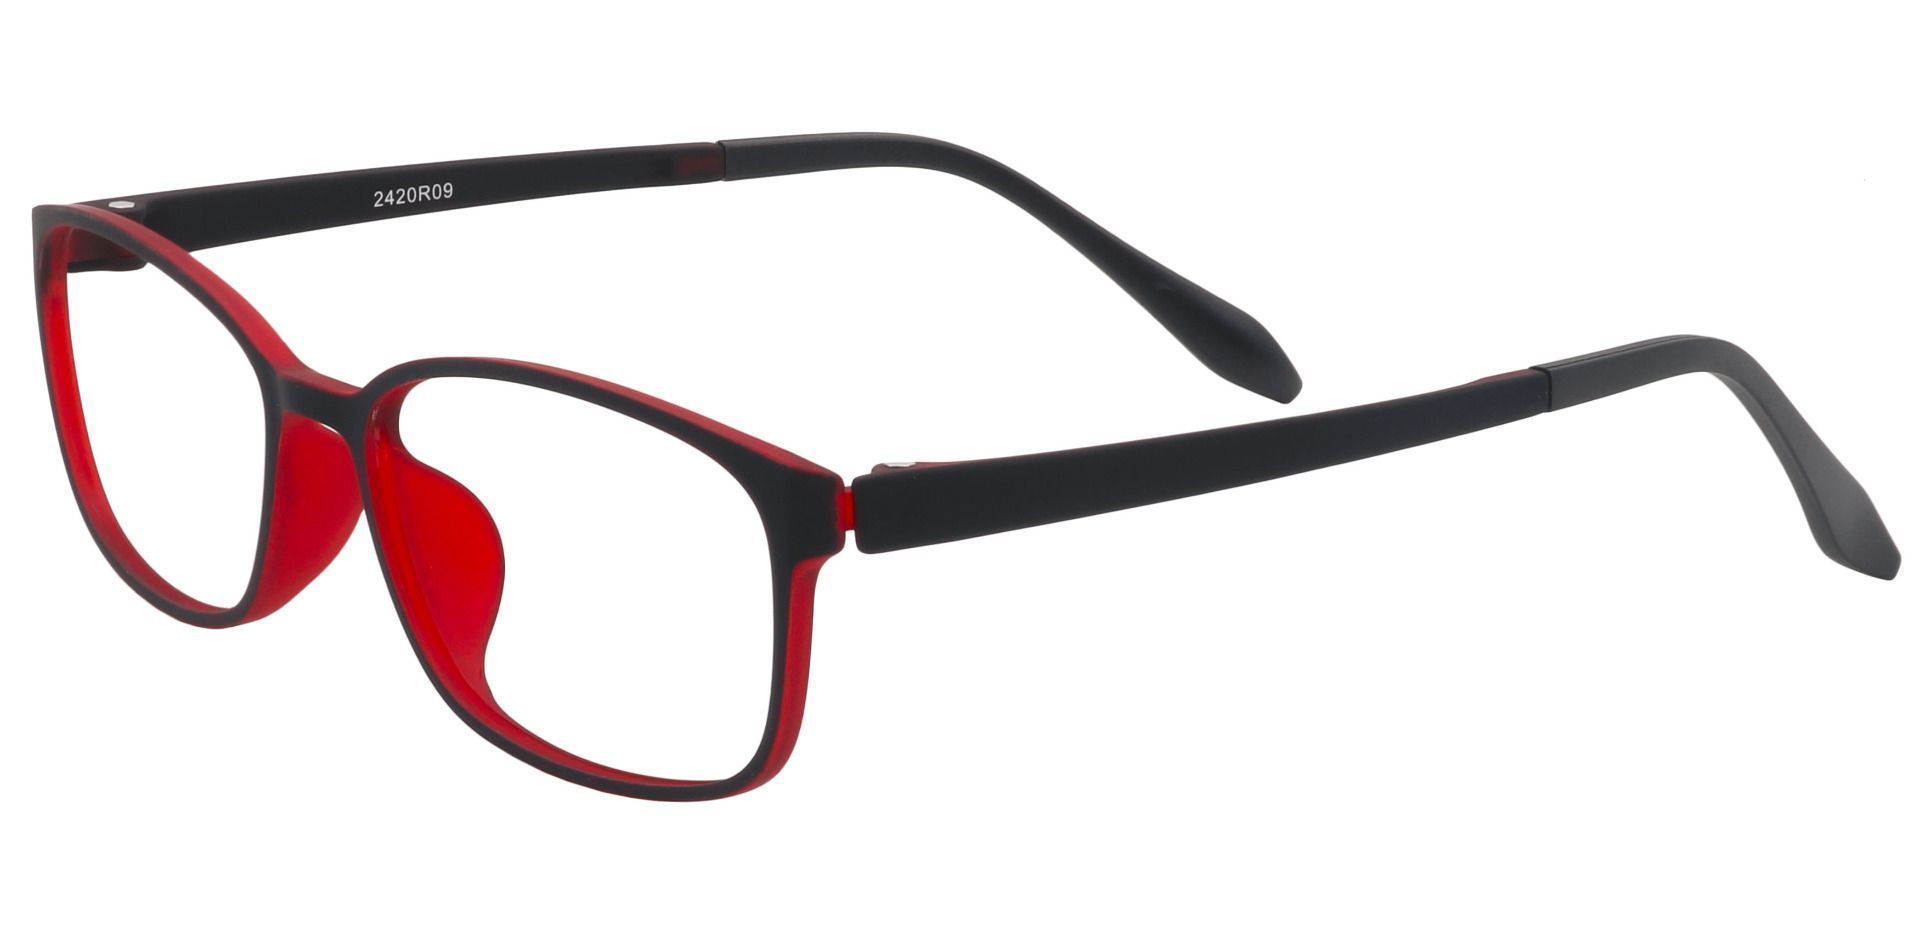 Merlot Rectangle Eyeglasses Frame - Matte Black/red